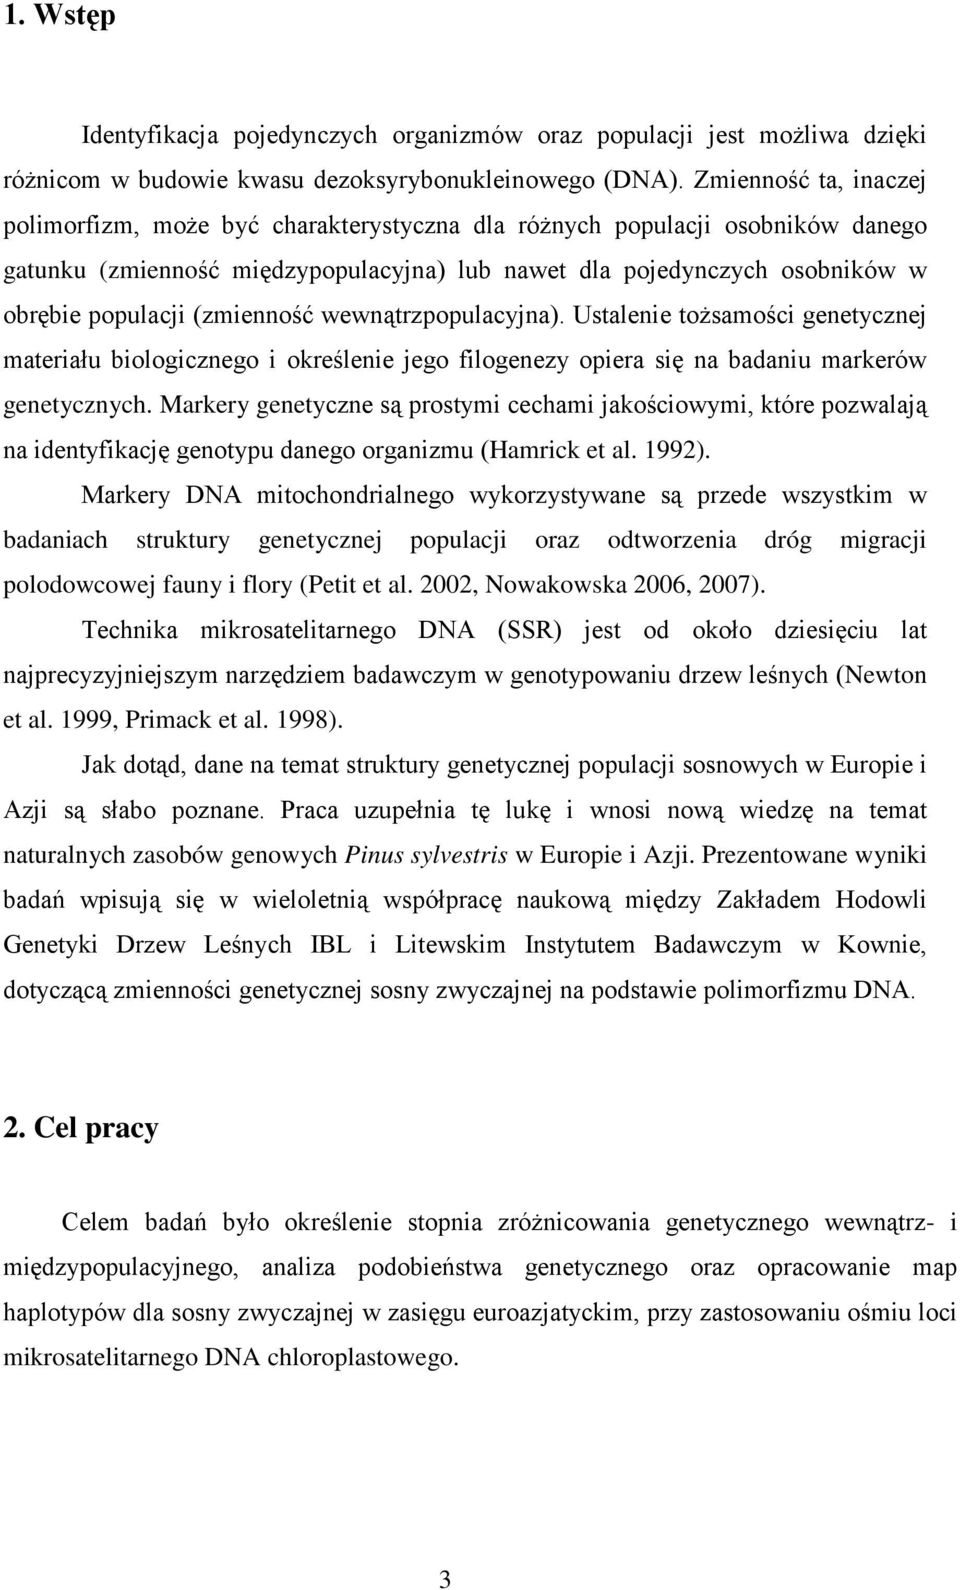 (zmienność wewnątrzpopulacyjna). Ustalenie tożsamości genetycznej materiału biologicznego i określenie jego filogenezy opiera się na badaniu markerów genetycznych.